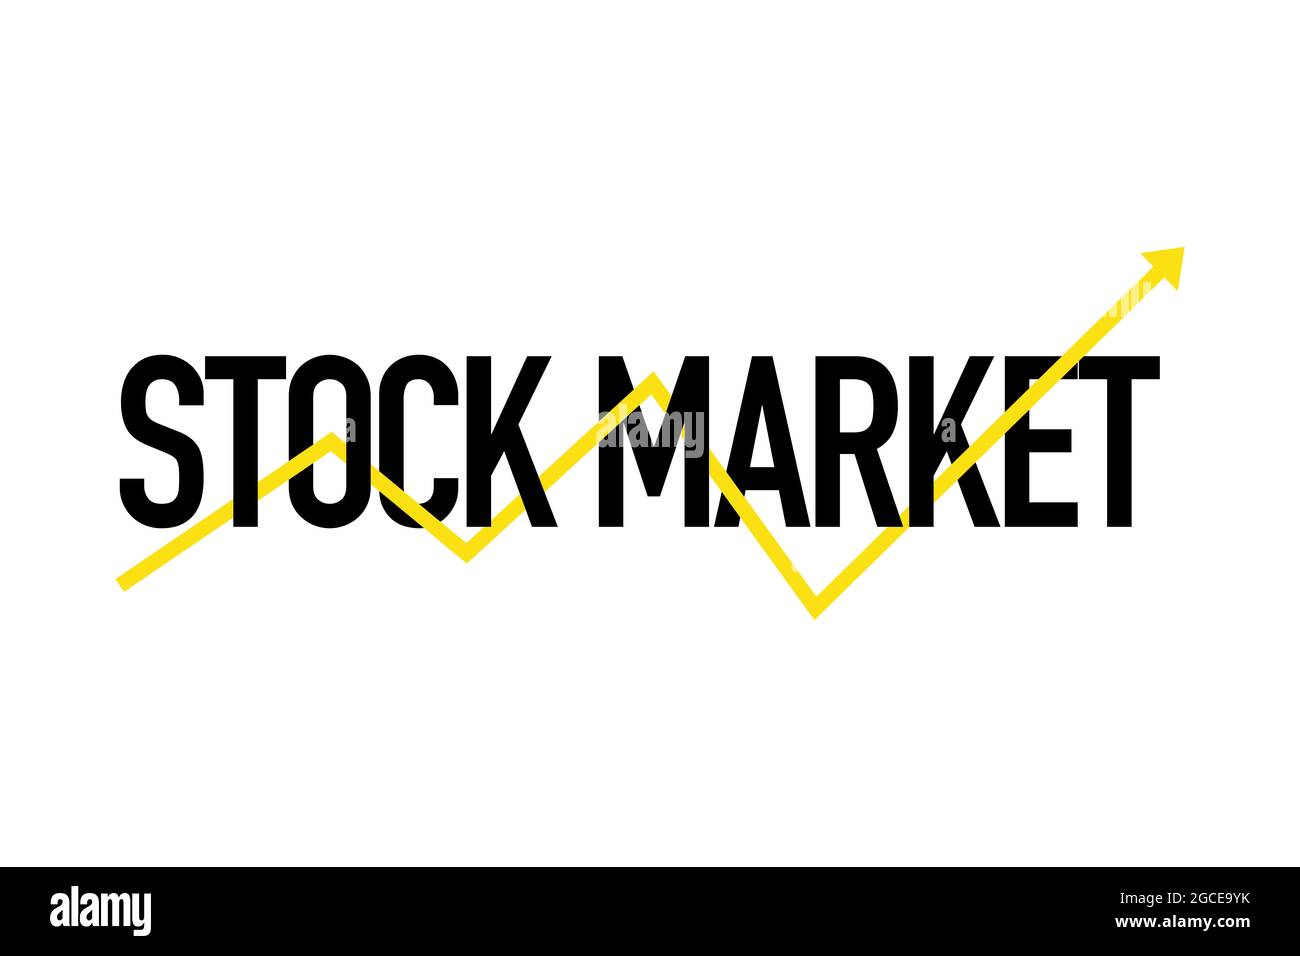 Modernes, schlichtes, lebendiges typografisches Design mit dem Spruch „Börse“ und aufsteigender Pfeilform in gelben und schwarzen Farben. Urbane, trendige Grafik Stockfoto